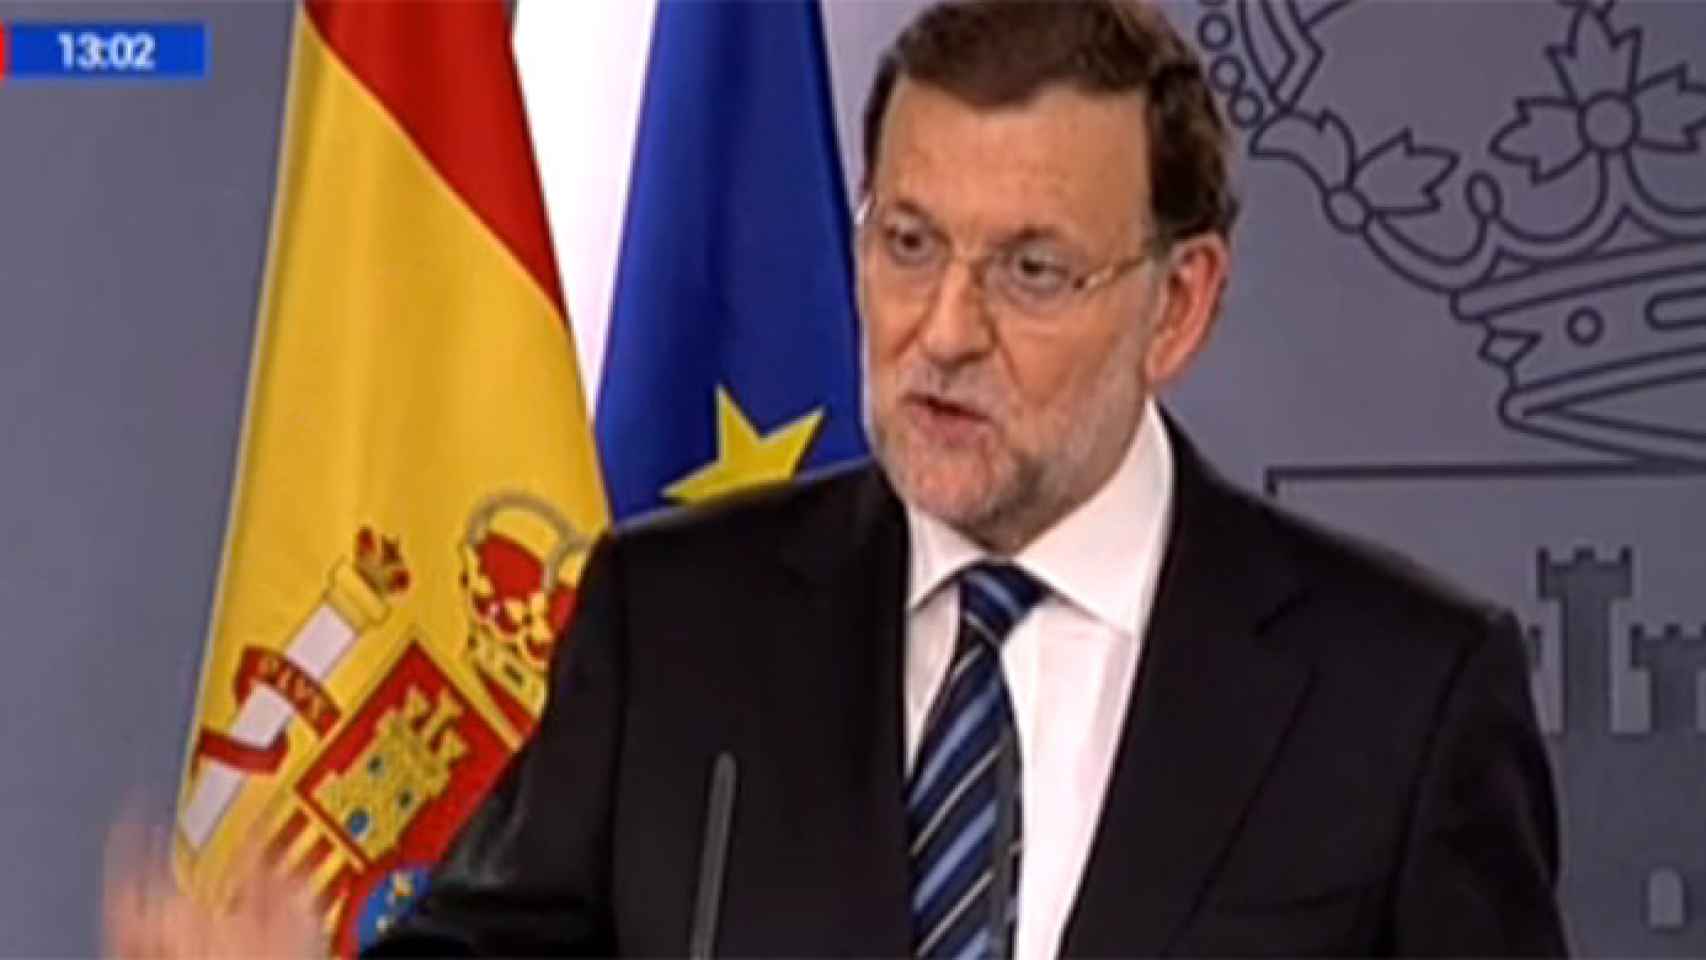 La doble vara de medir de TVE: directo para Rajoy, silencio para Mas